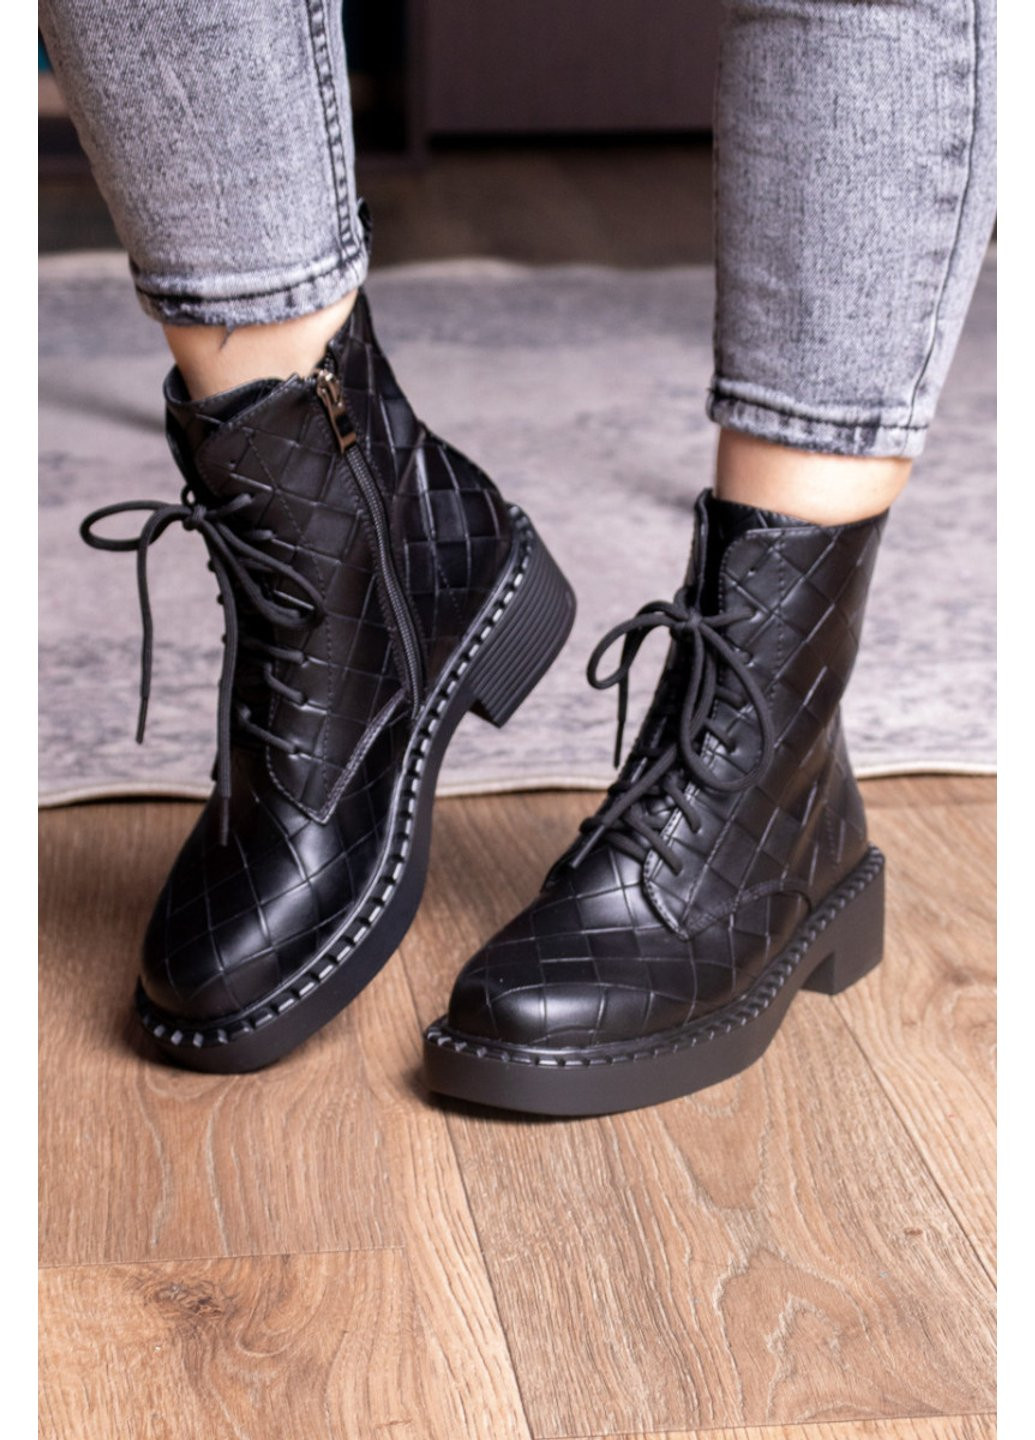 Осенние ботинки женские richardson 2396 24 черный Fashion из искусственной кожи